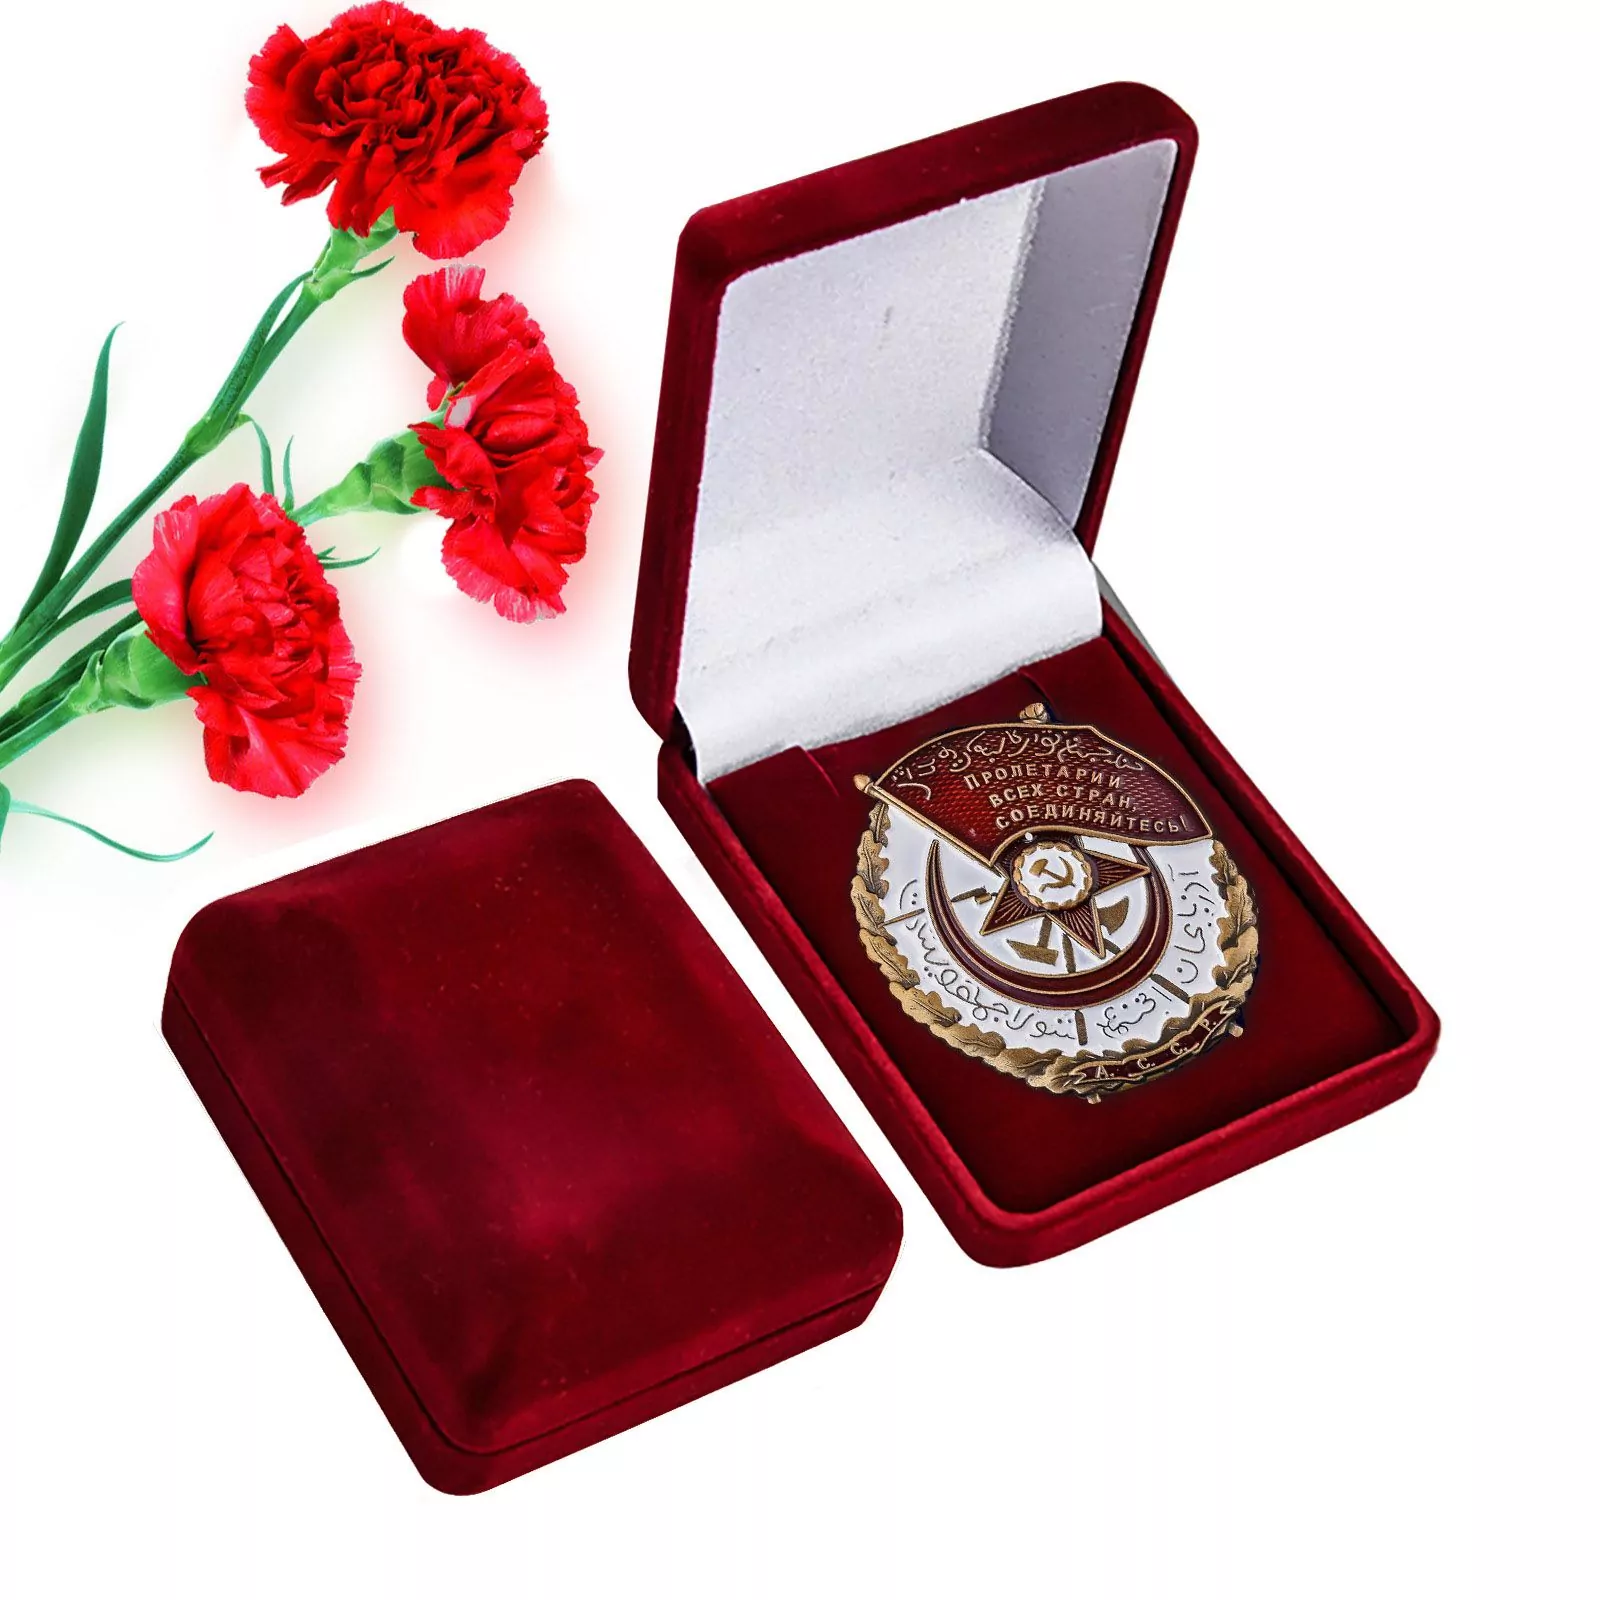 Сувенирный орден Красного Знамени Азербайджанской ССР в подарочном футляре №942